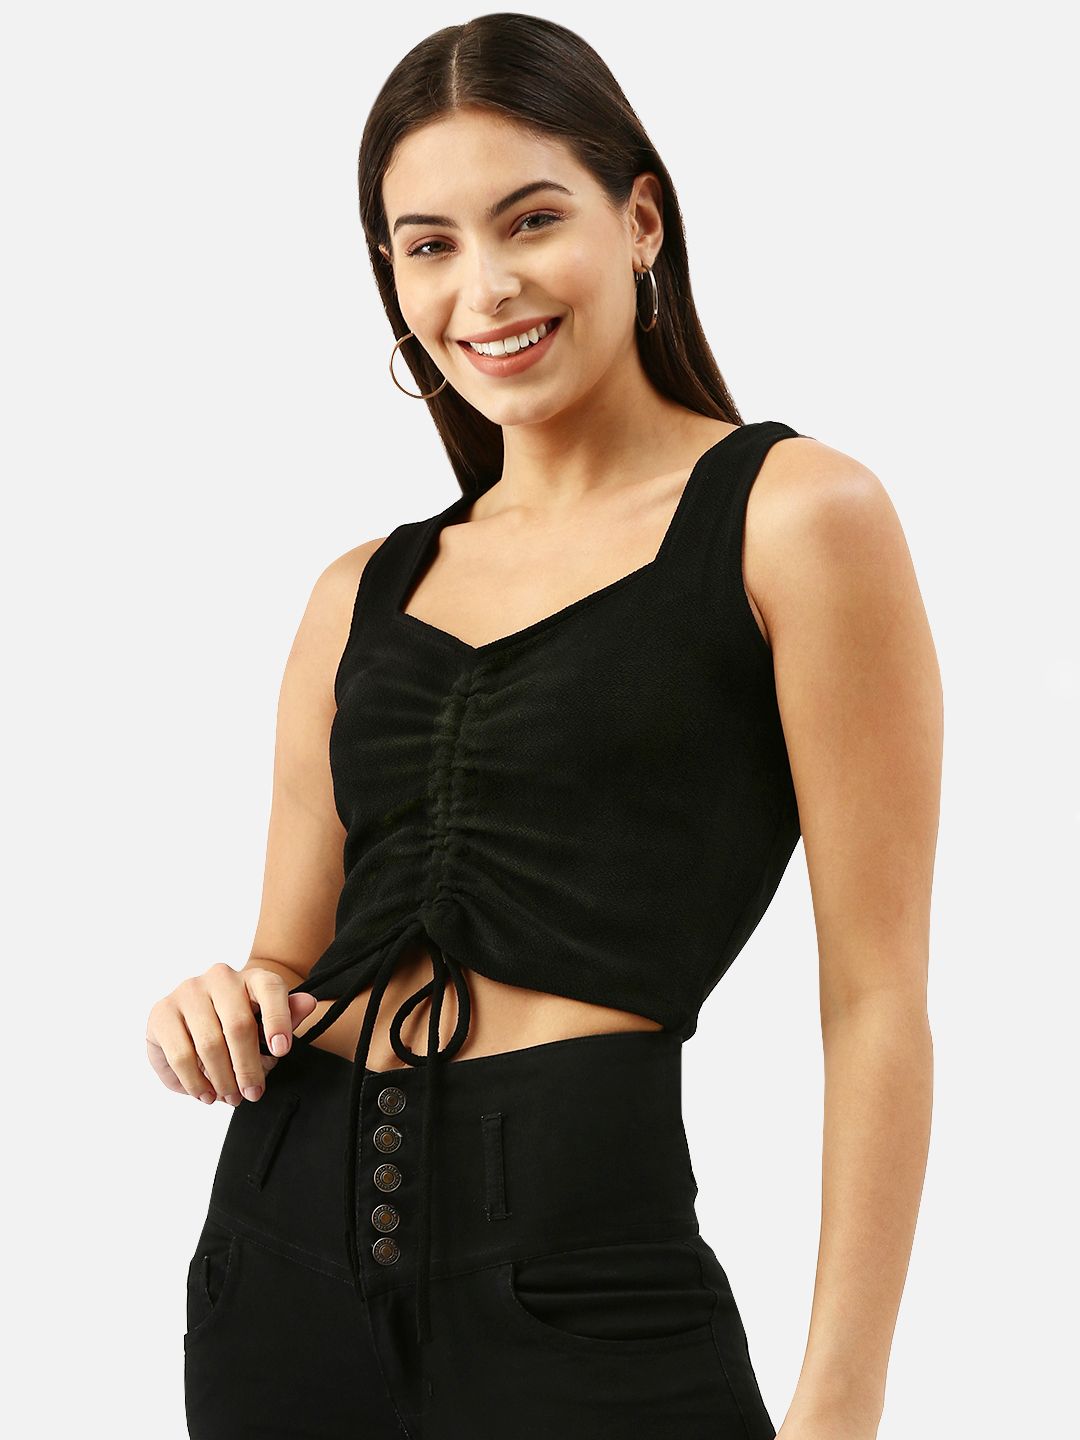 Buy IZF Black Bodycon Skirt for Women's Online @ Tata CLiQ